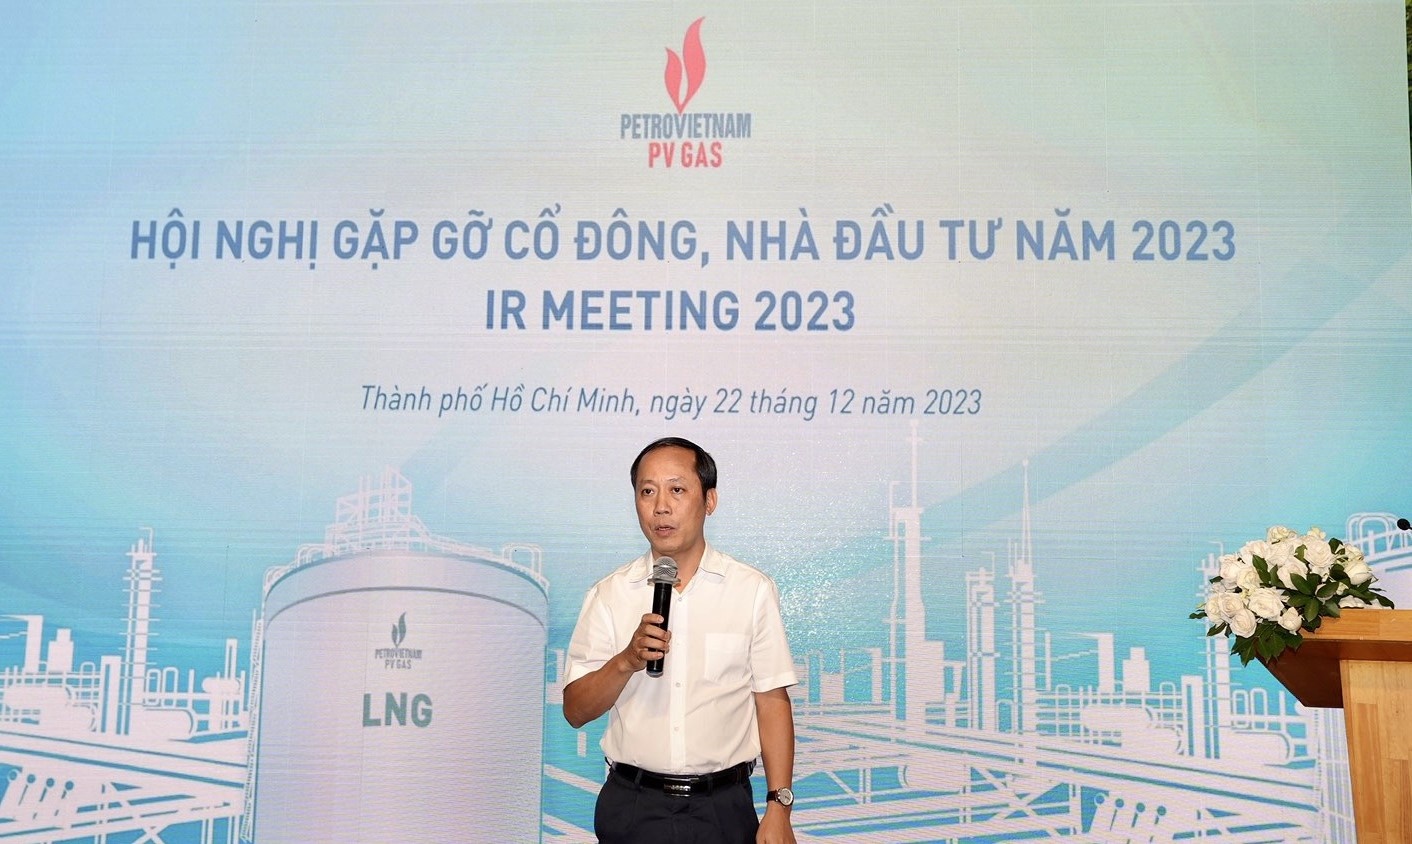 Phó Tổng Giám đốc PV GAS Phạm Đăng Nam gửi lời cảm ơn sâu sắc đến các cổ đông và các nhà đầu tư đã đến tham dự Hội nghị.